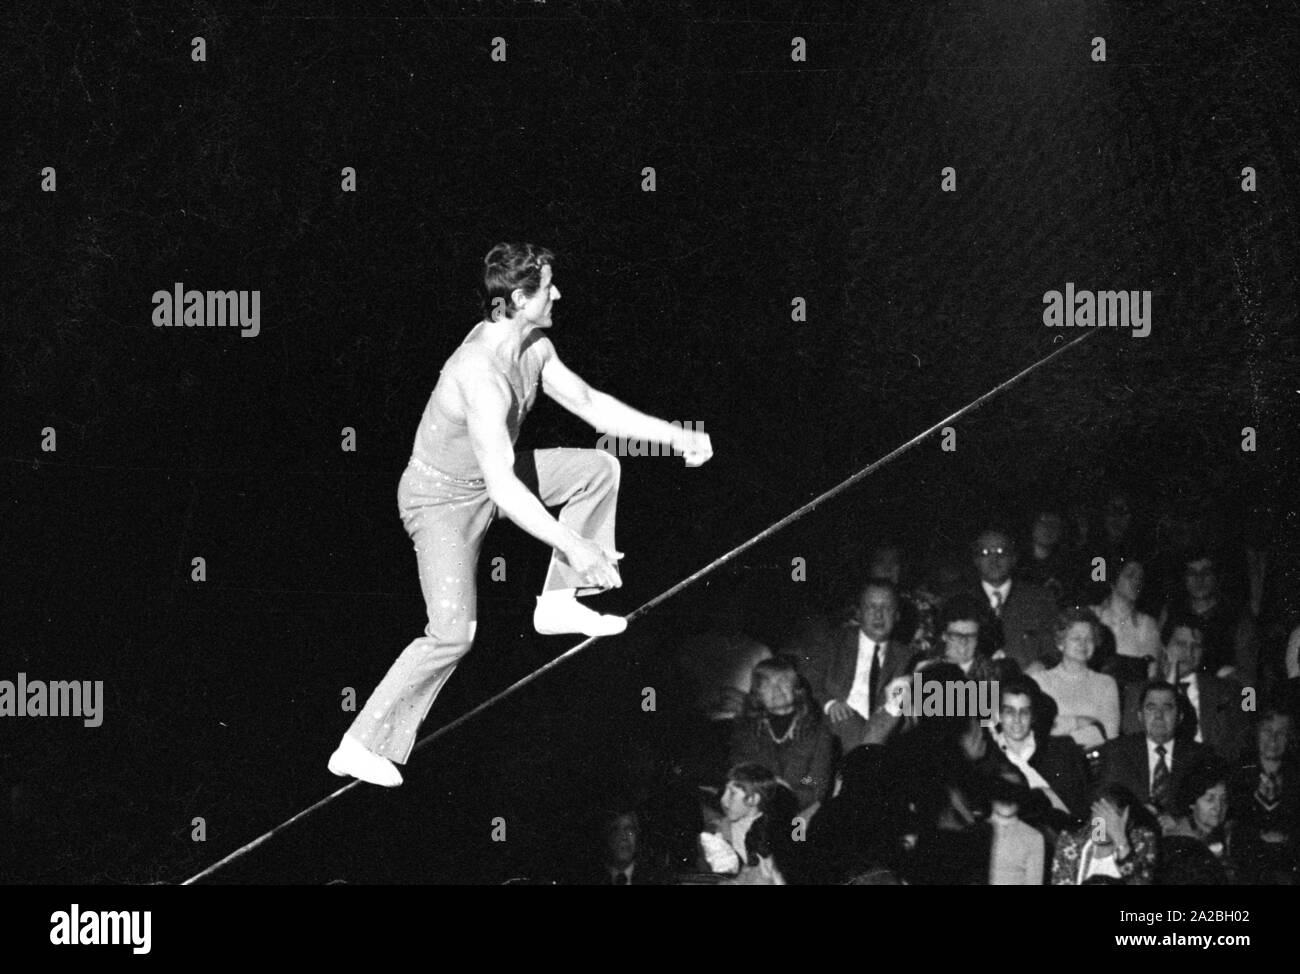 Rendimiento de un artista en la cuerda floja de un circo, probablemente el Circus Krone. Foto de stock